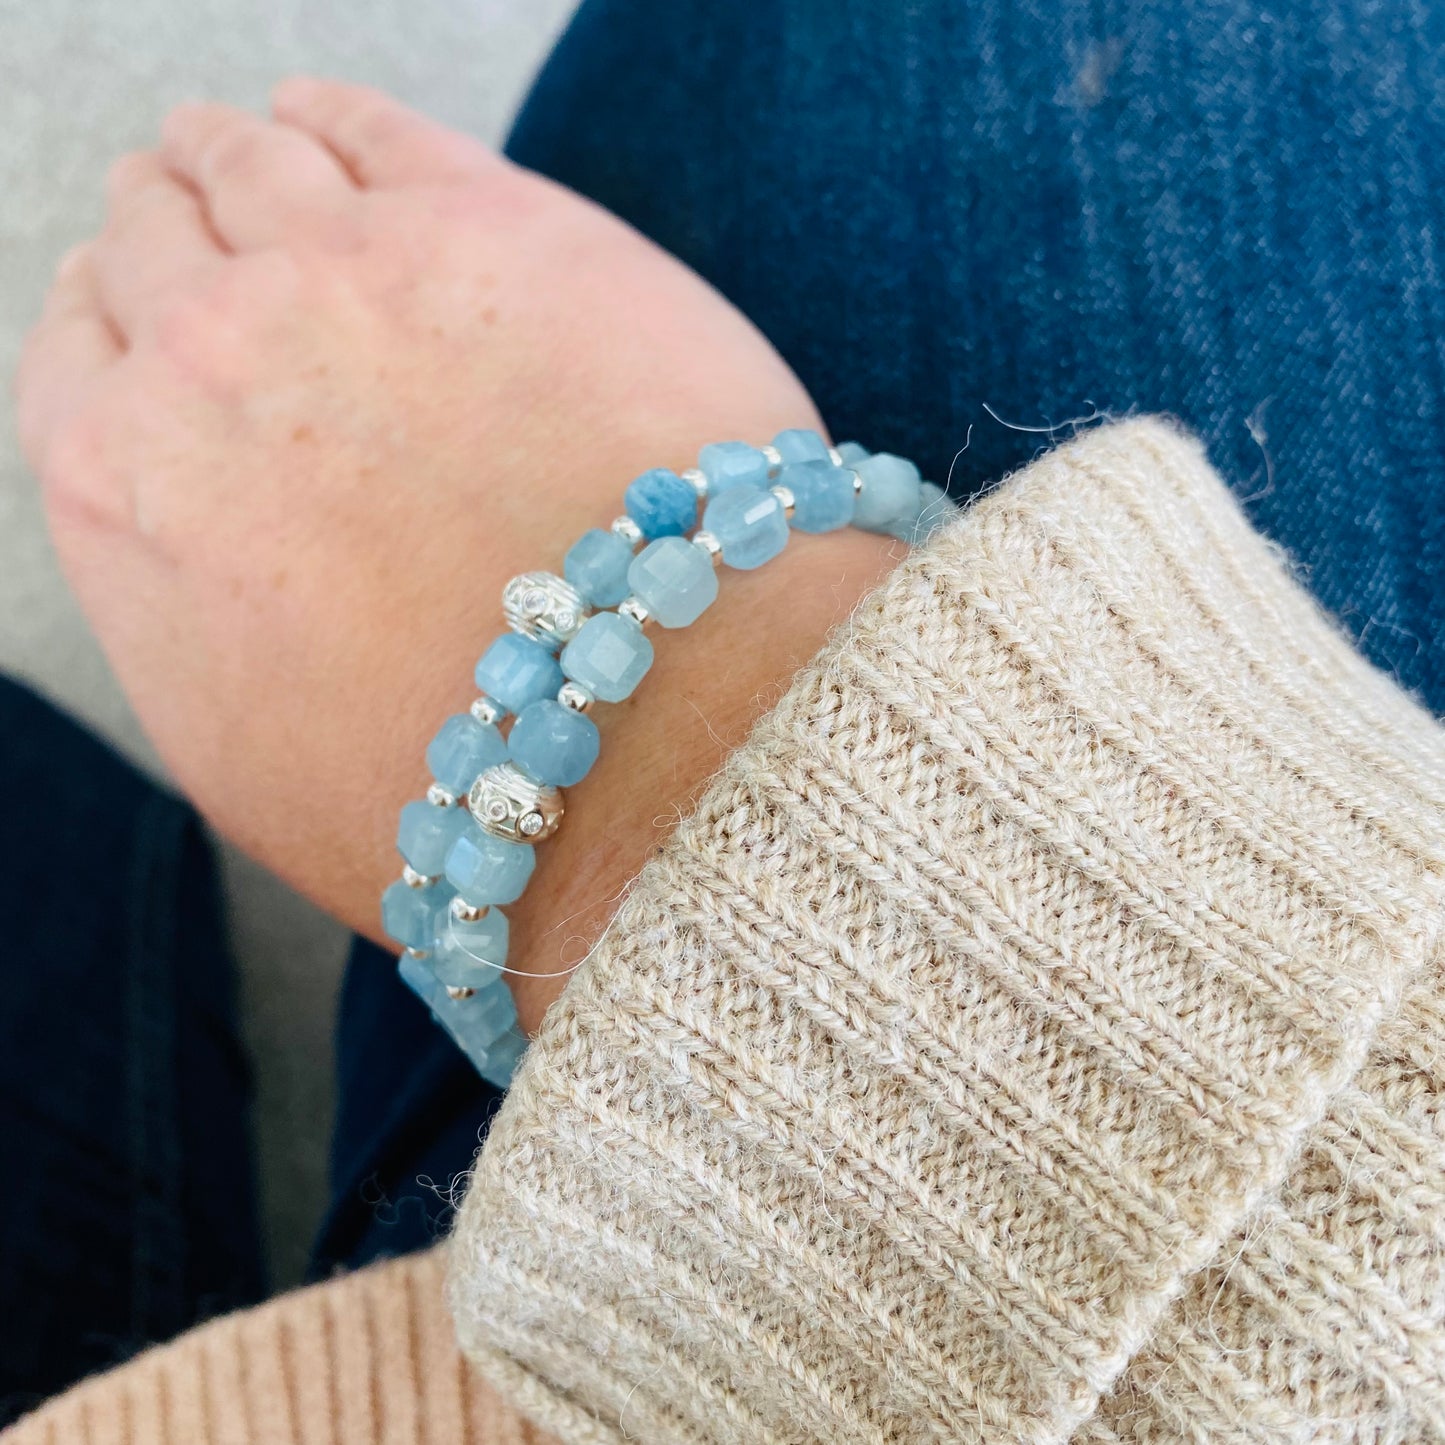 Aquamarine bracelets